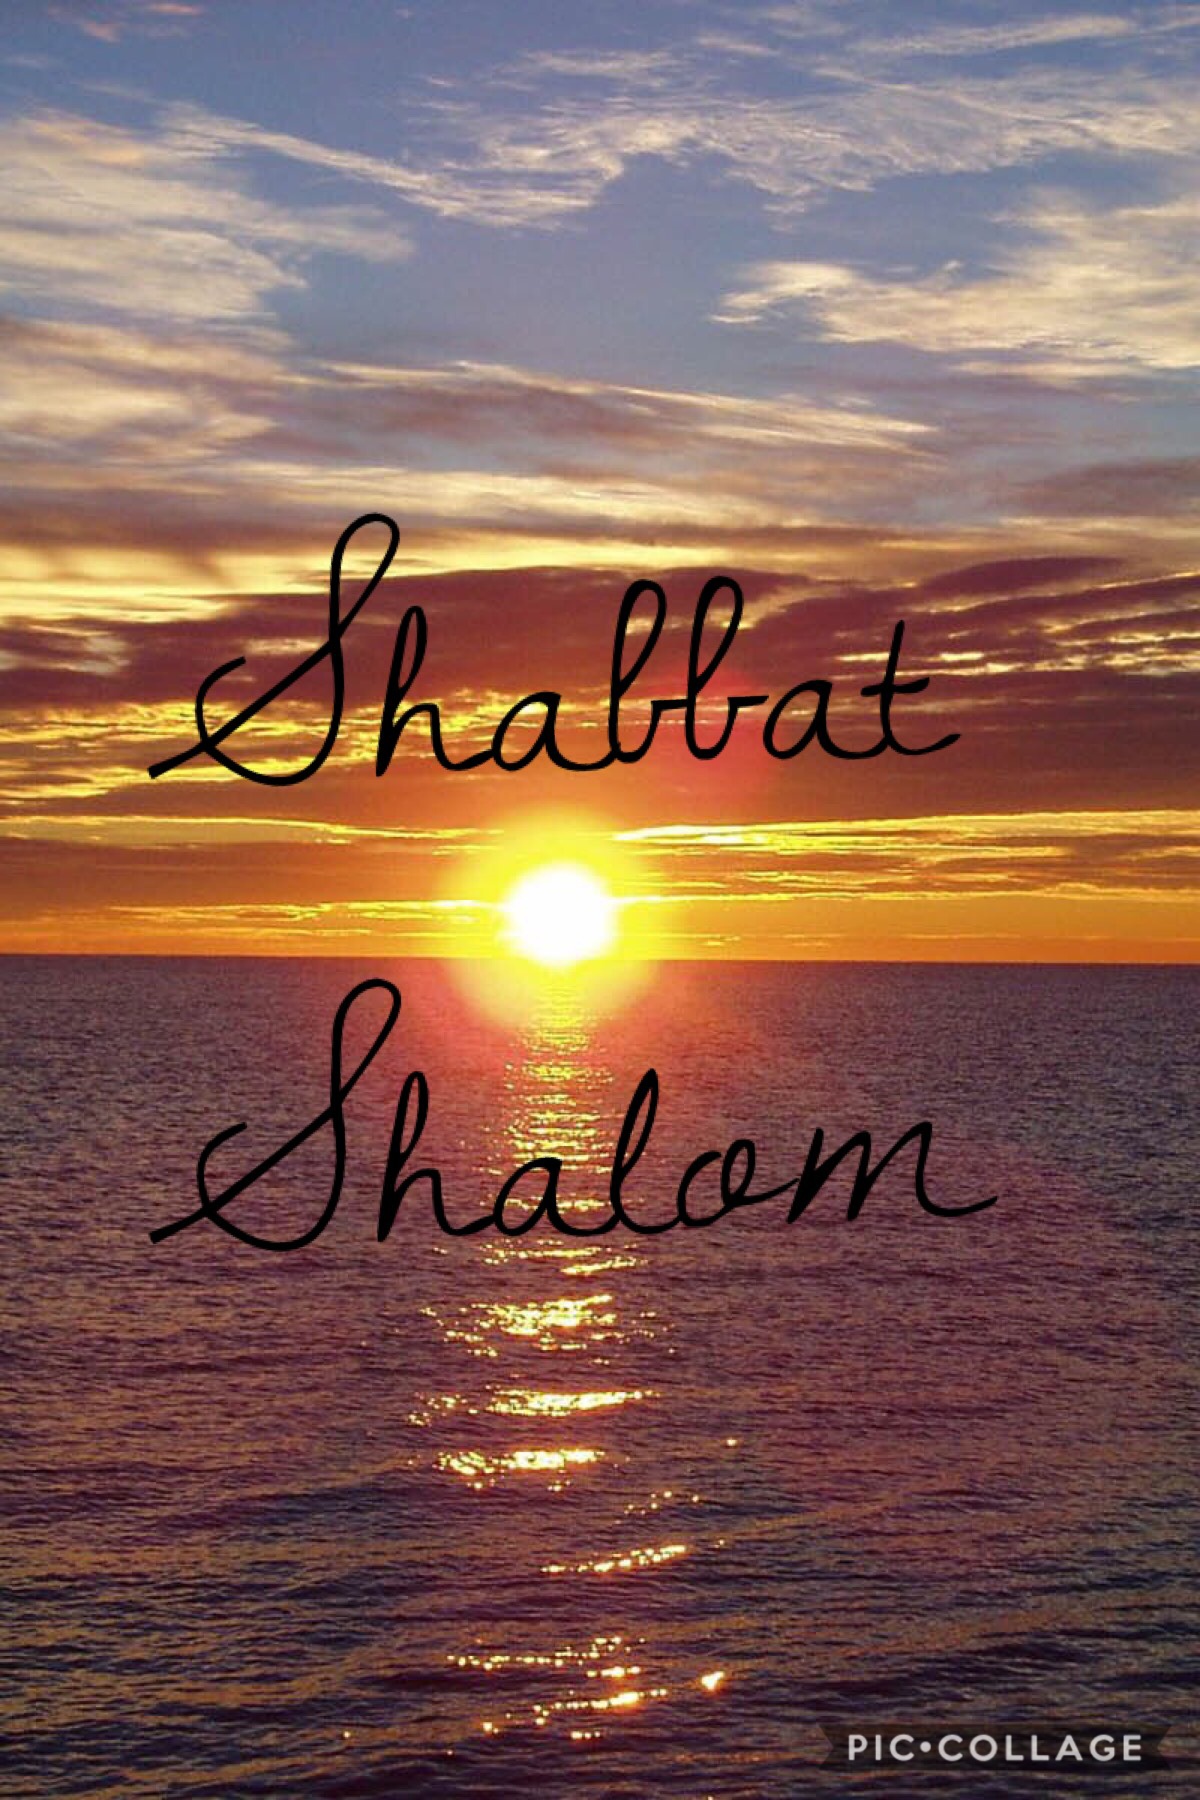 Shabbat shalom to everyone 